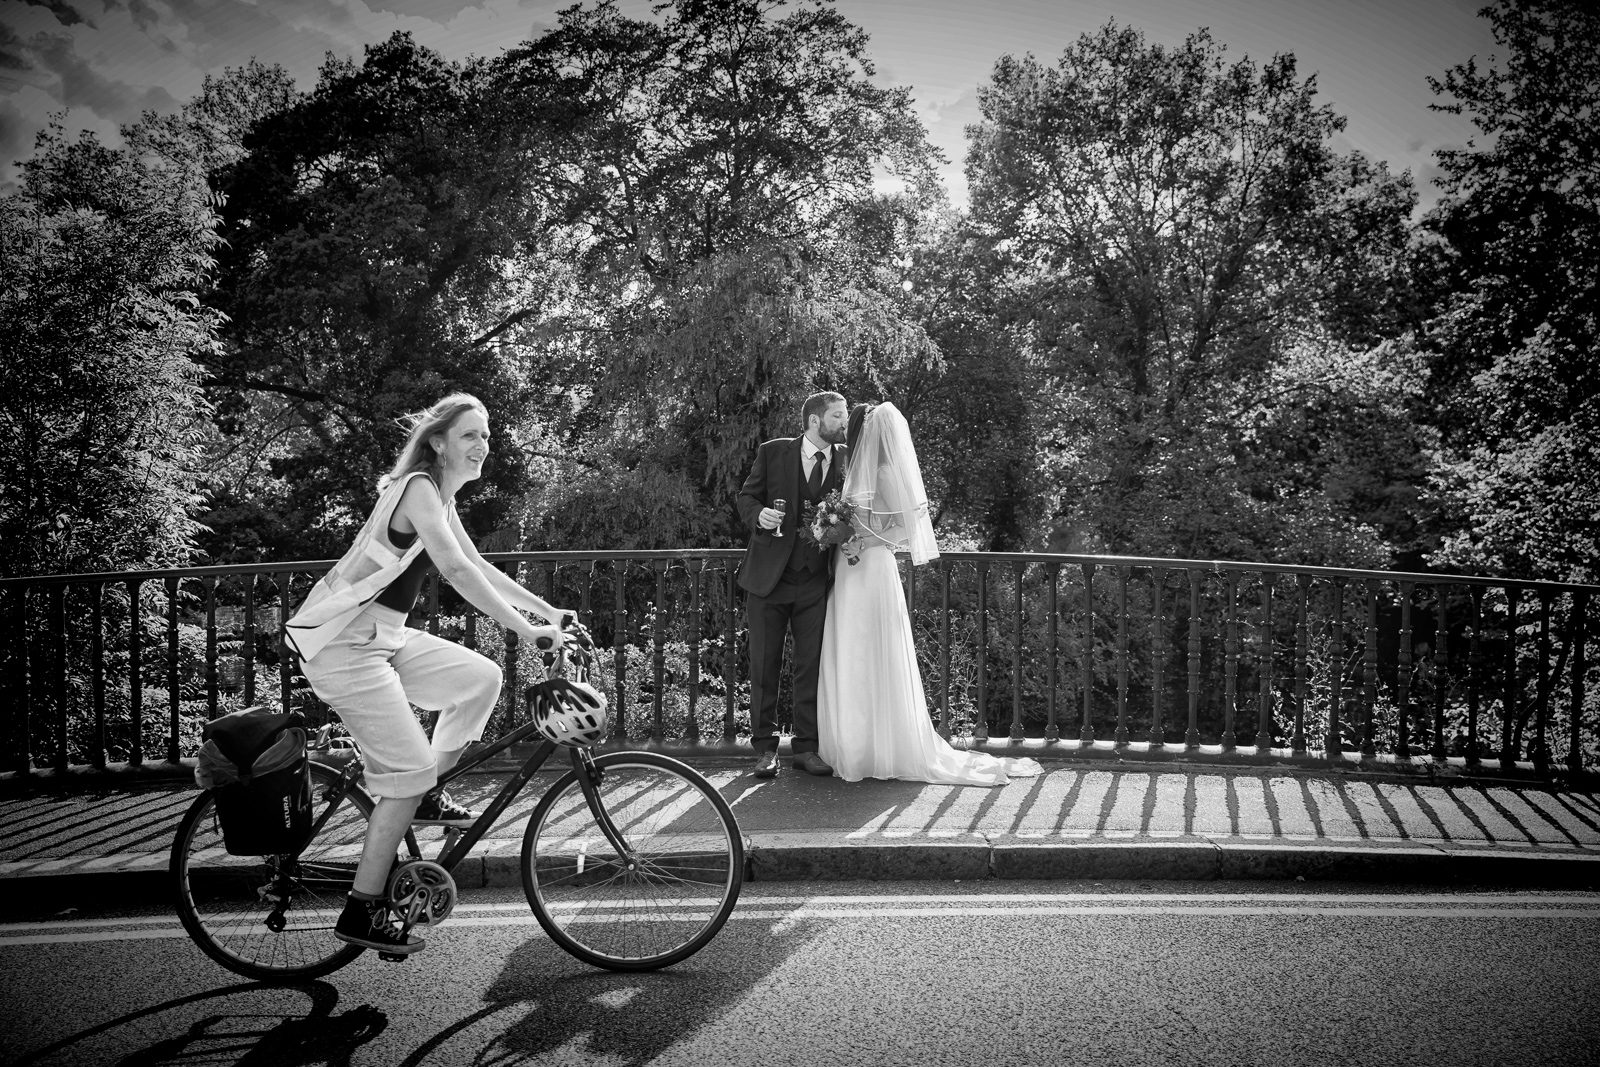 Cyclist rides past bride and groom Regents Park bridge London